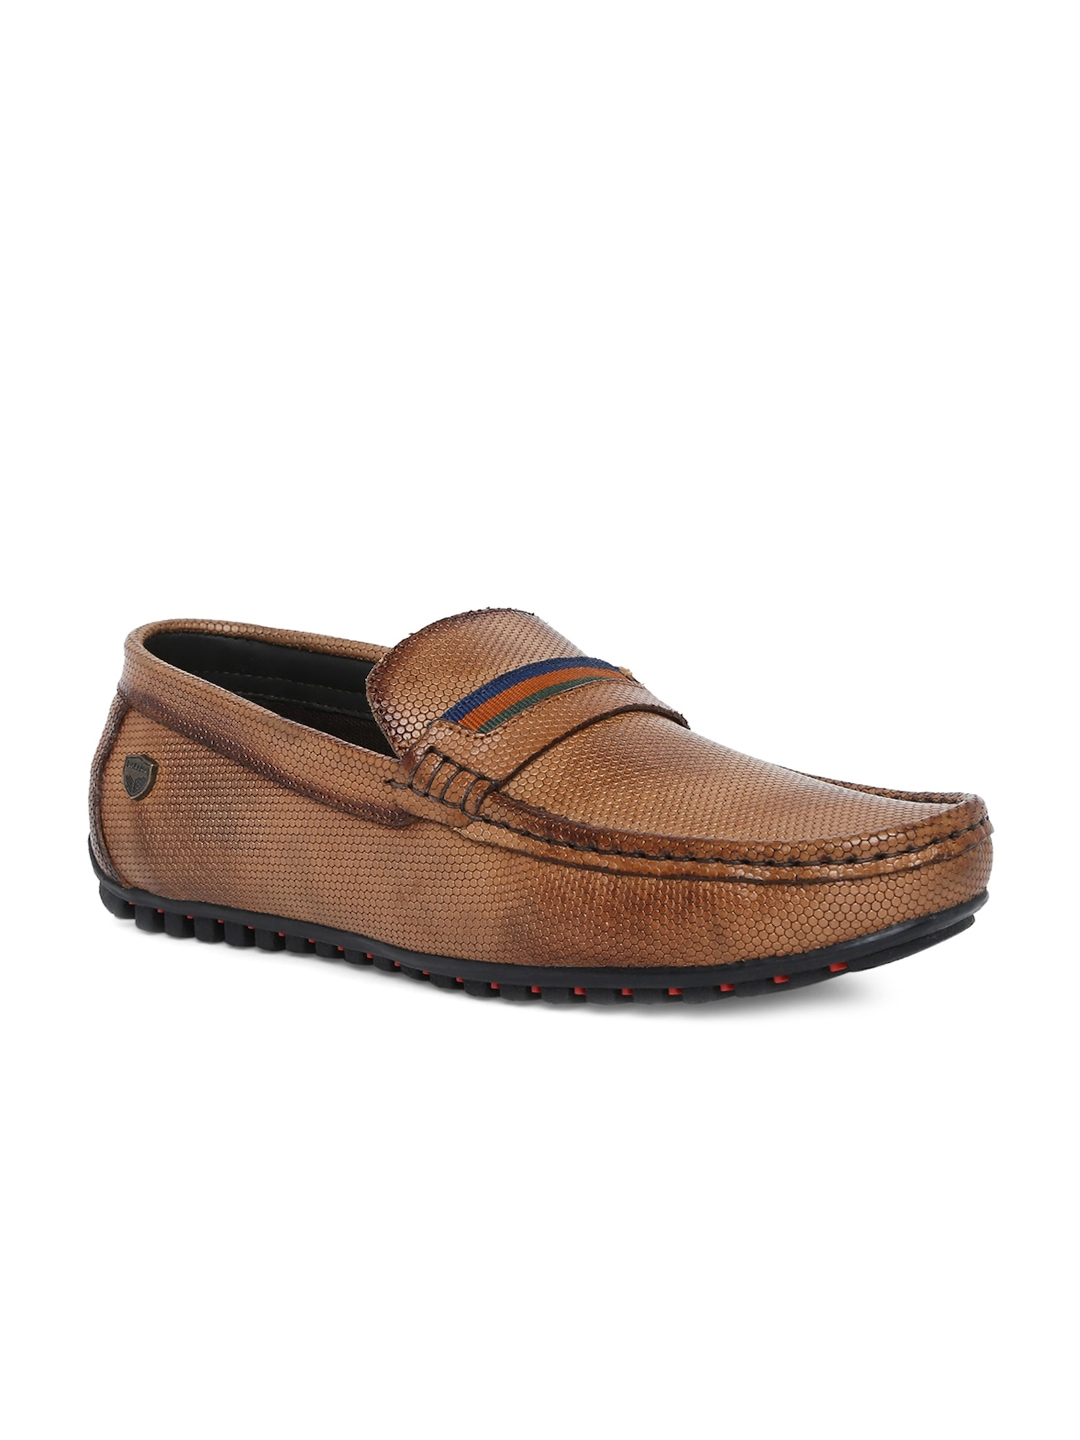 

Buckaroo Men Textured Slip-On Leather Loafers, Tan